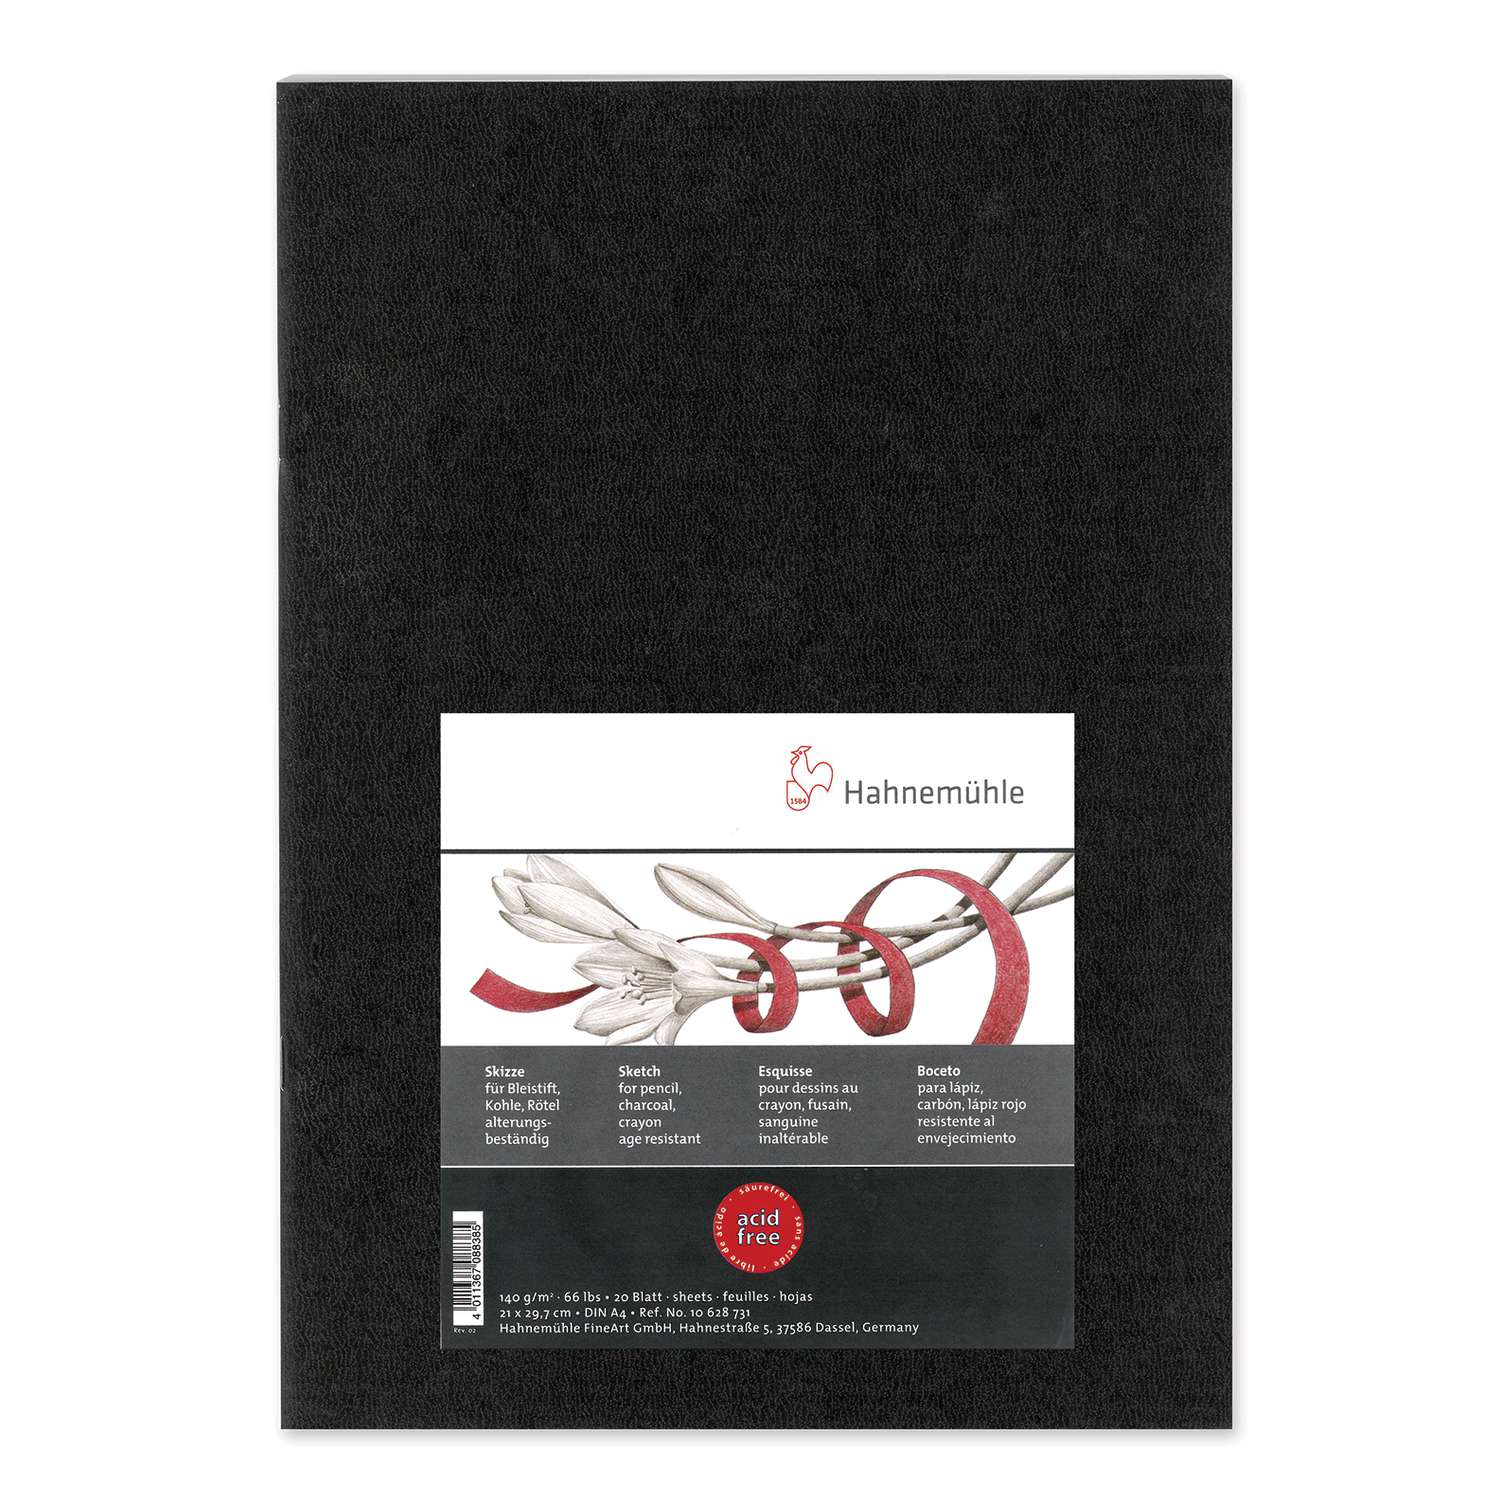 Carnet à dessin A4 - 40 feuilles noires - 190g - Monali - Papier de Dessin  Esquisse et Pastel - Dessin - Pastel